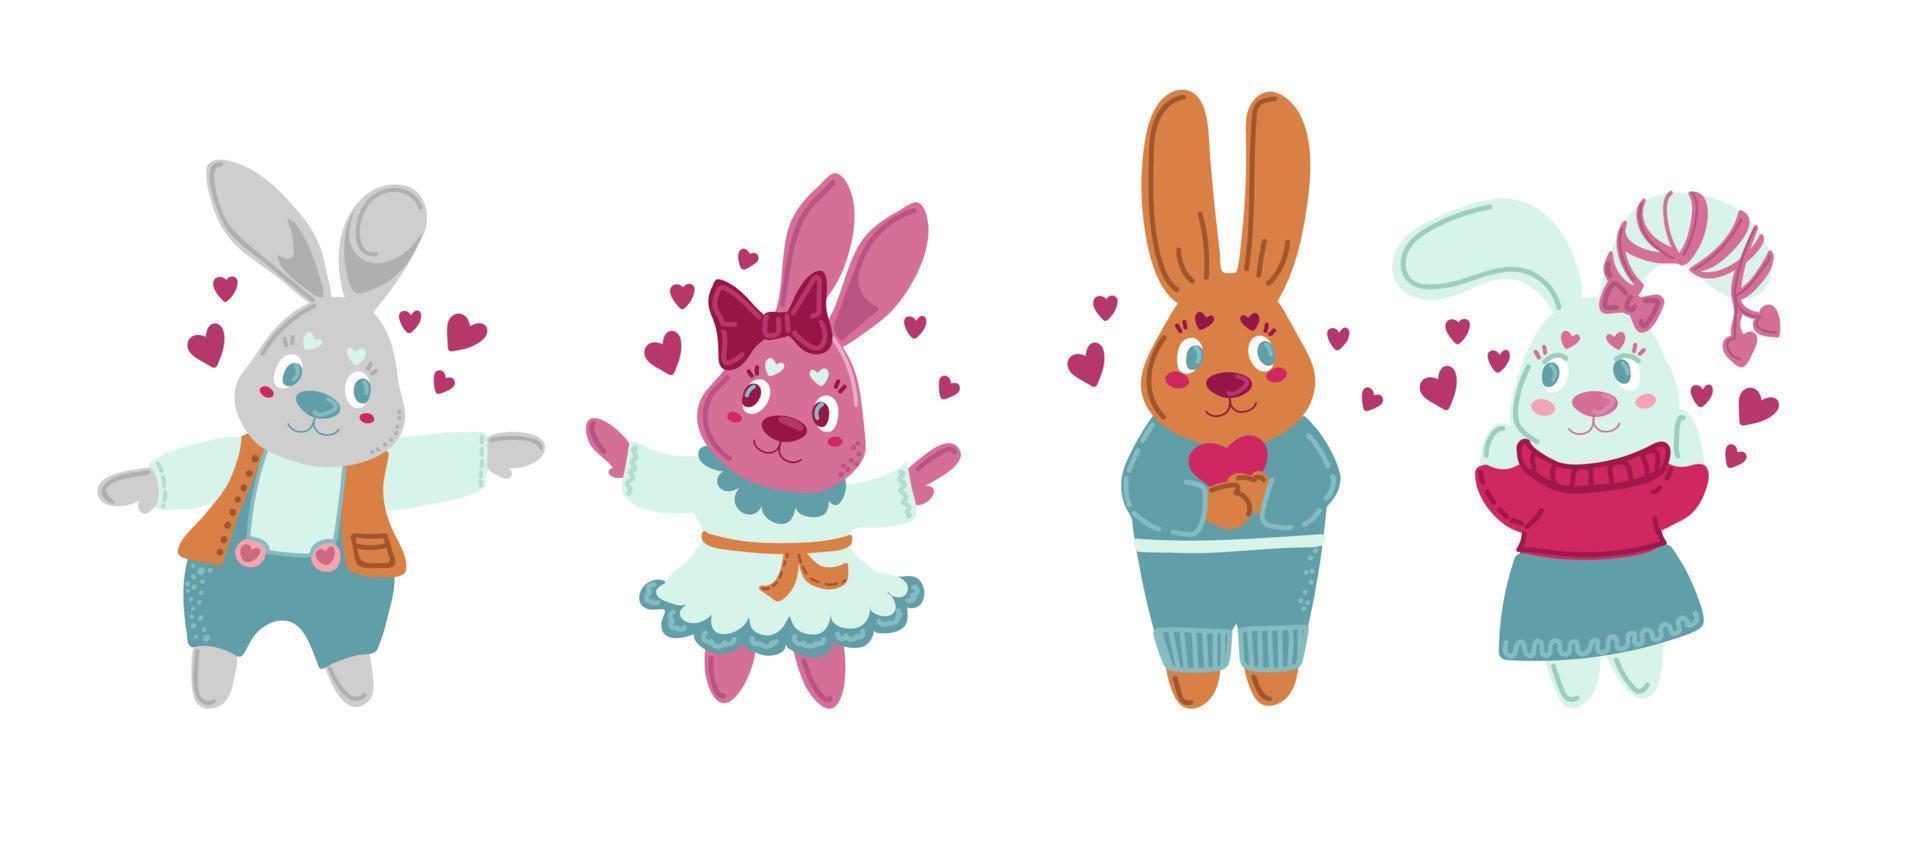 cartão de dia dos namorados com coelho kawaii. coleção de vetores de desenhos animados de coelho. personagem de vida selvagem animal. pequeno coelho adorável detém coração de amor. ilustração do dia dos namorados.